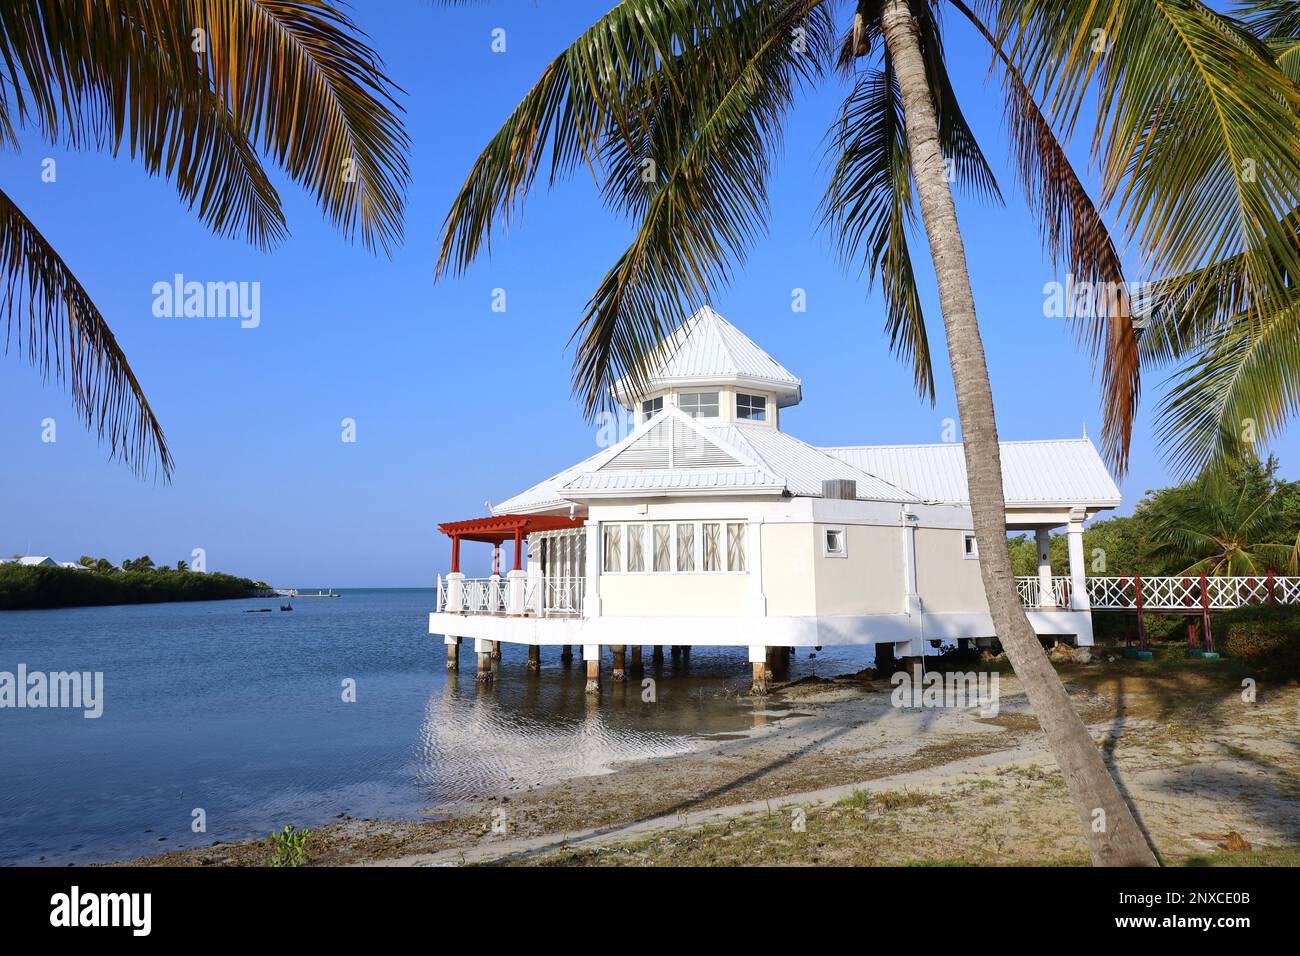 Vue pittoresque sur une maison blanche sur pilotis sur une plage tropicale avec des palmiers à noix de coco. Villa dans une baie sur l'île des Caraïbes Banque D'Images